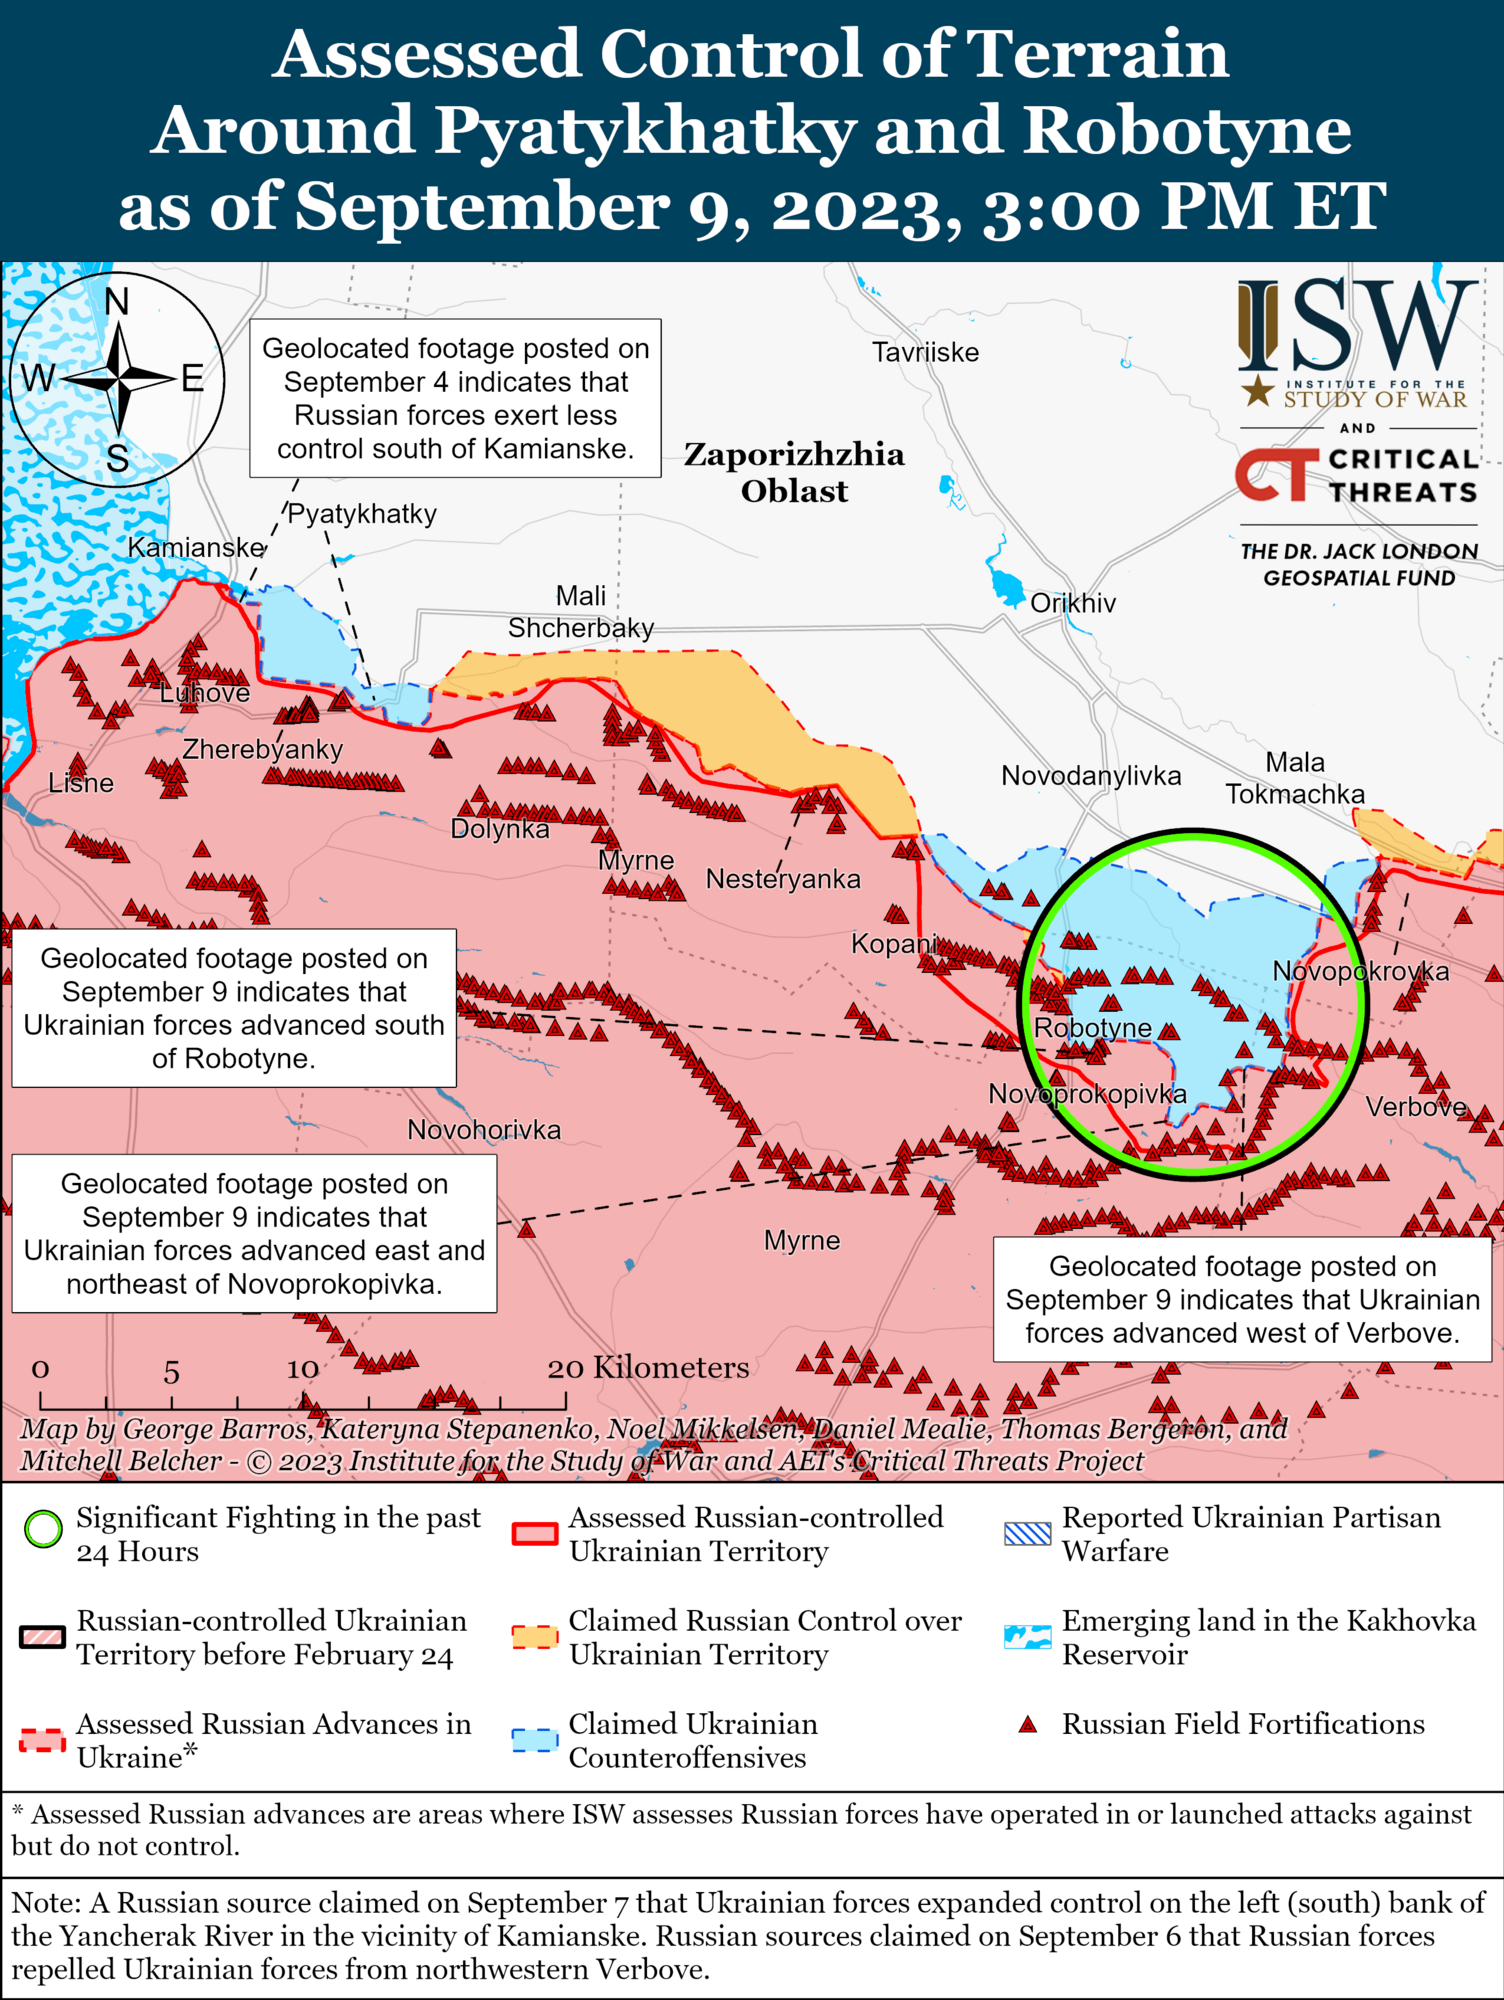 Сили оборони просуваються на кількох напрямках: аналіз ISW. Карта